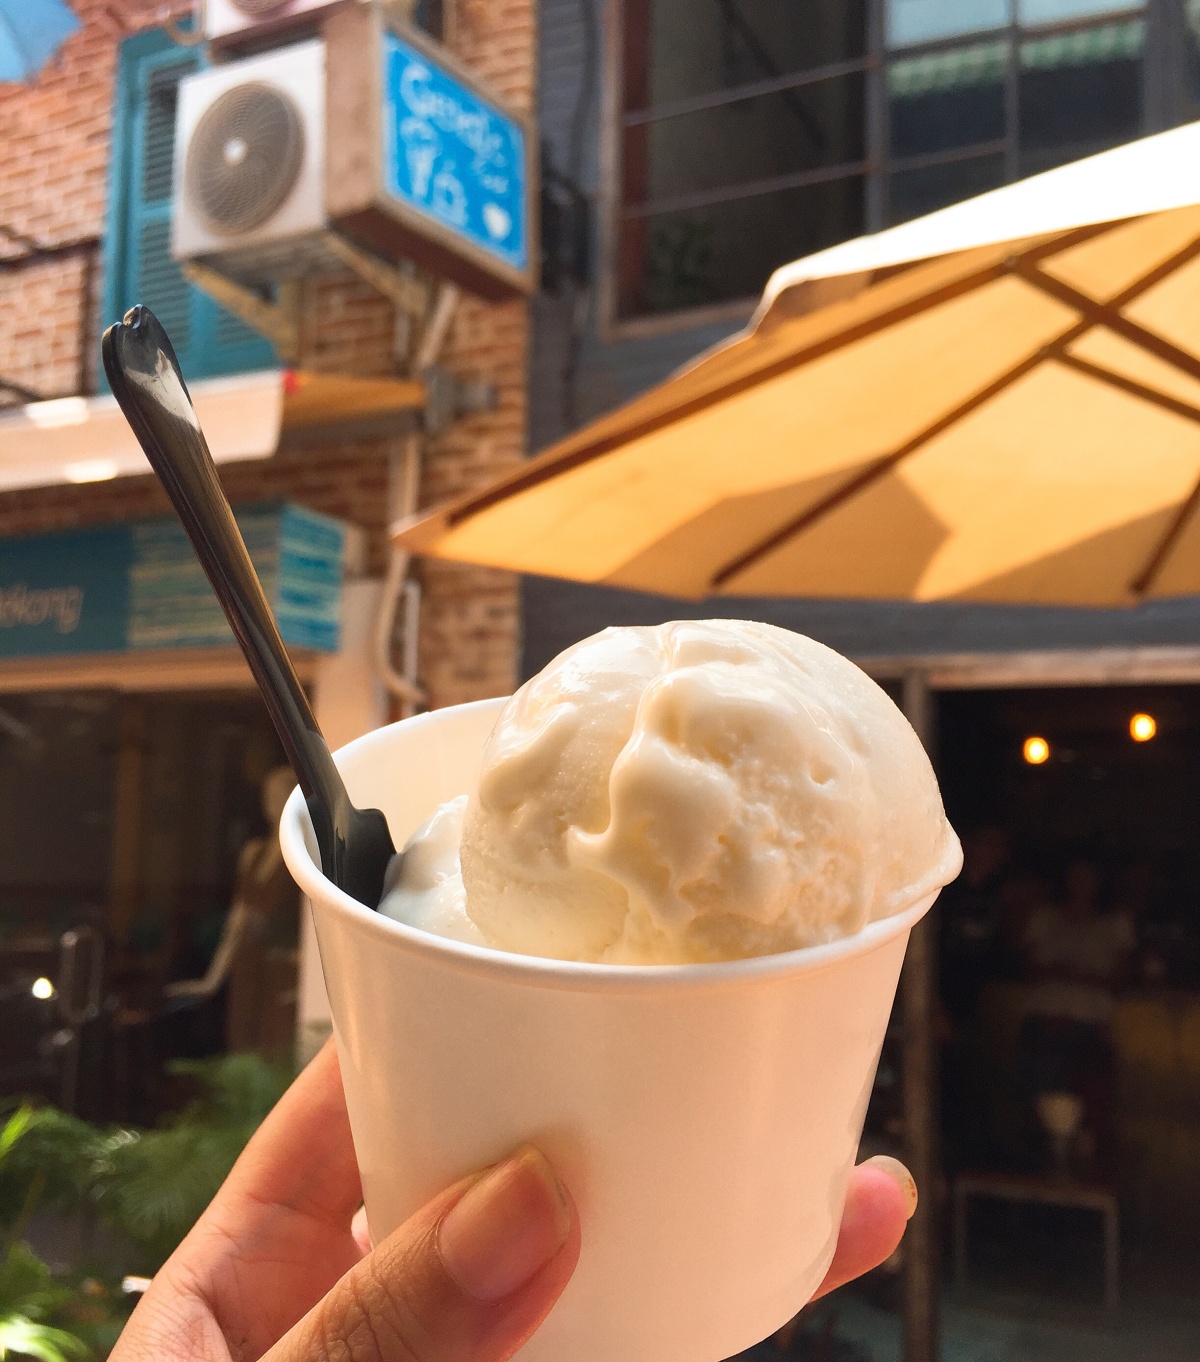 ✤ 吳哥食記【Gelato Lab】- 入境隨俗了的義式冰淇淋